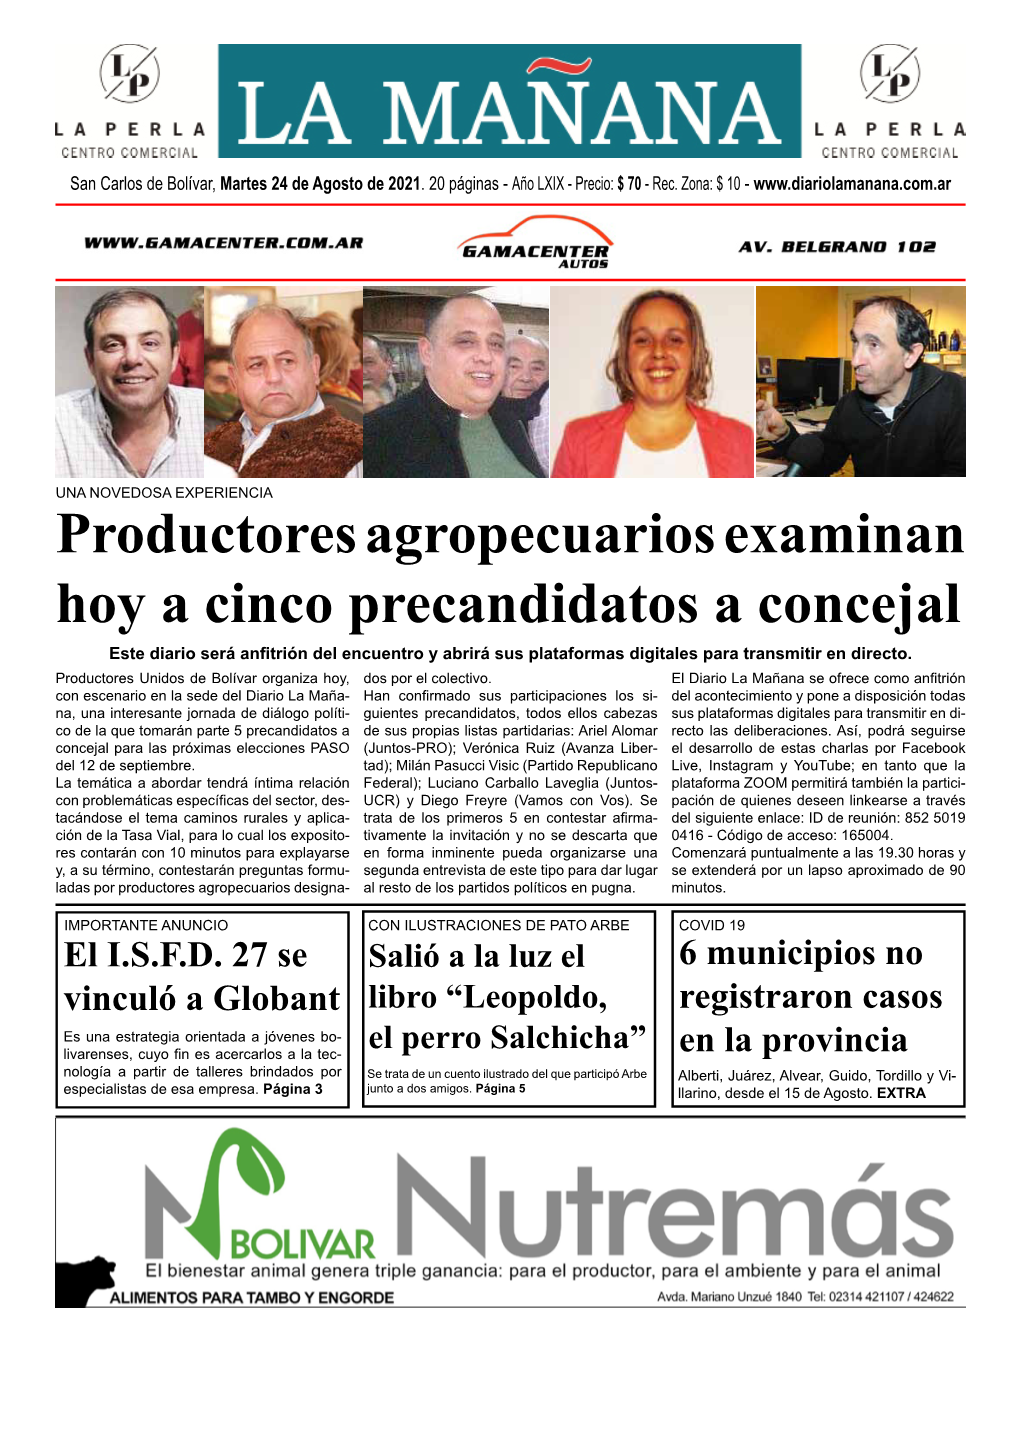 Productores Agropecuarios Examinan Hoy a Cinco Precandidatos a Concejal